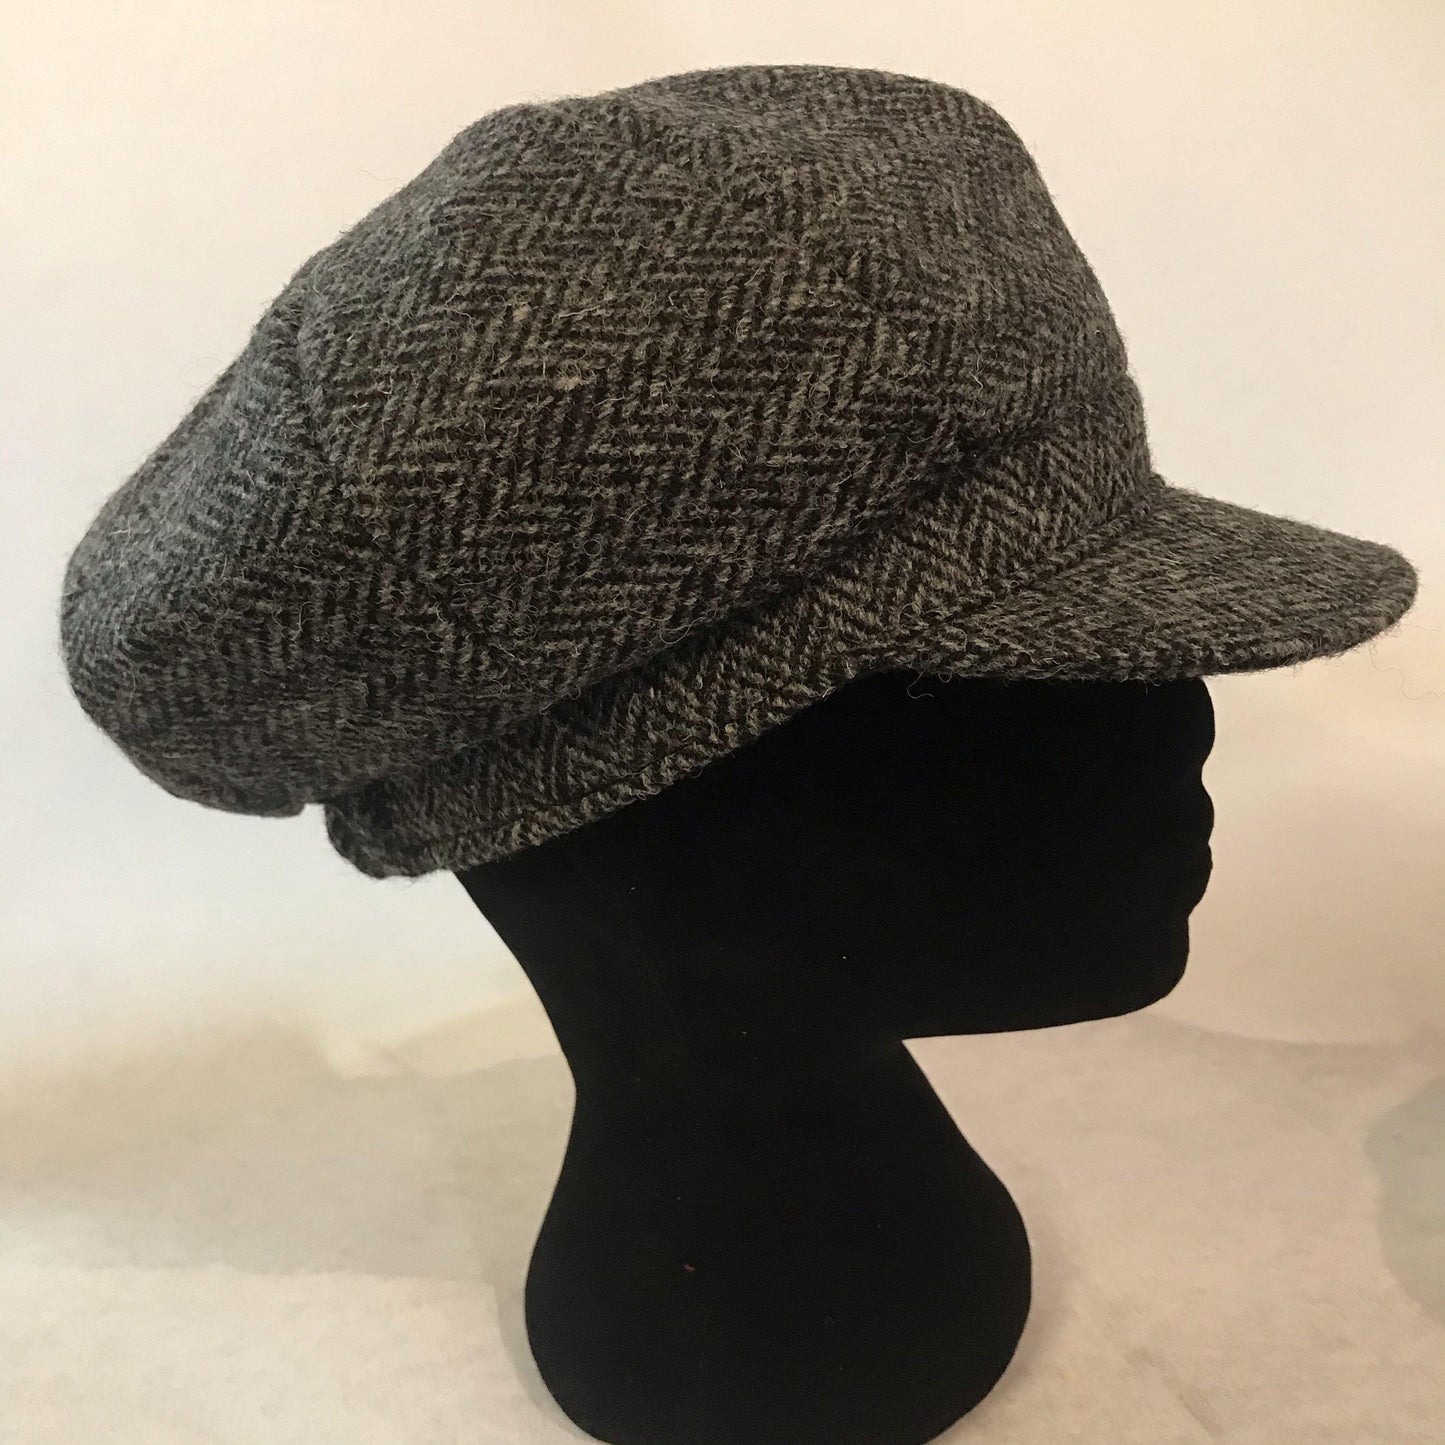 Ladies Harris Tweed Grey Black Baker Boy Rain Hat Made in UK - Free Life's Love